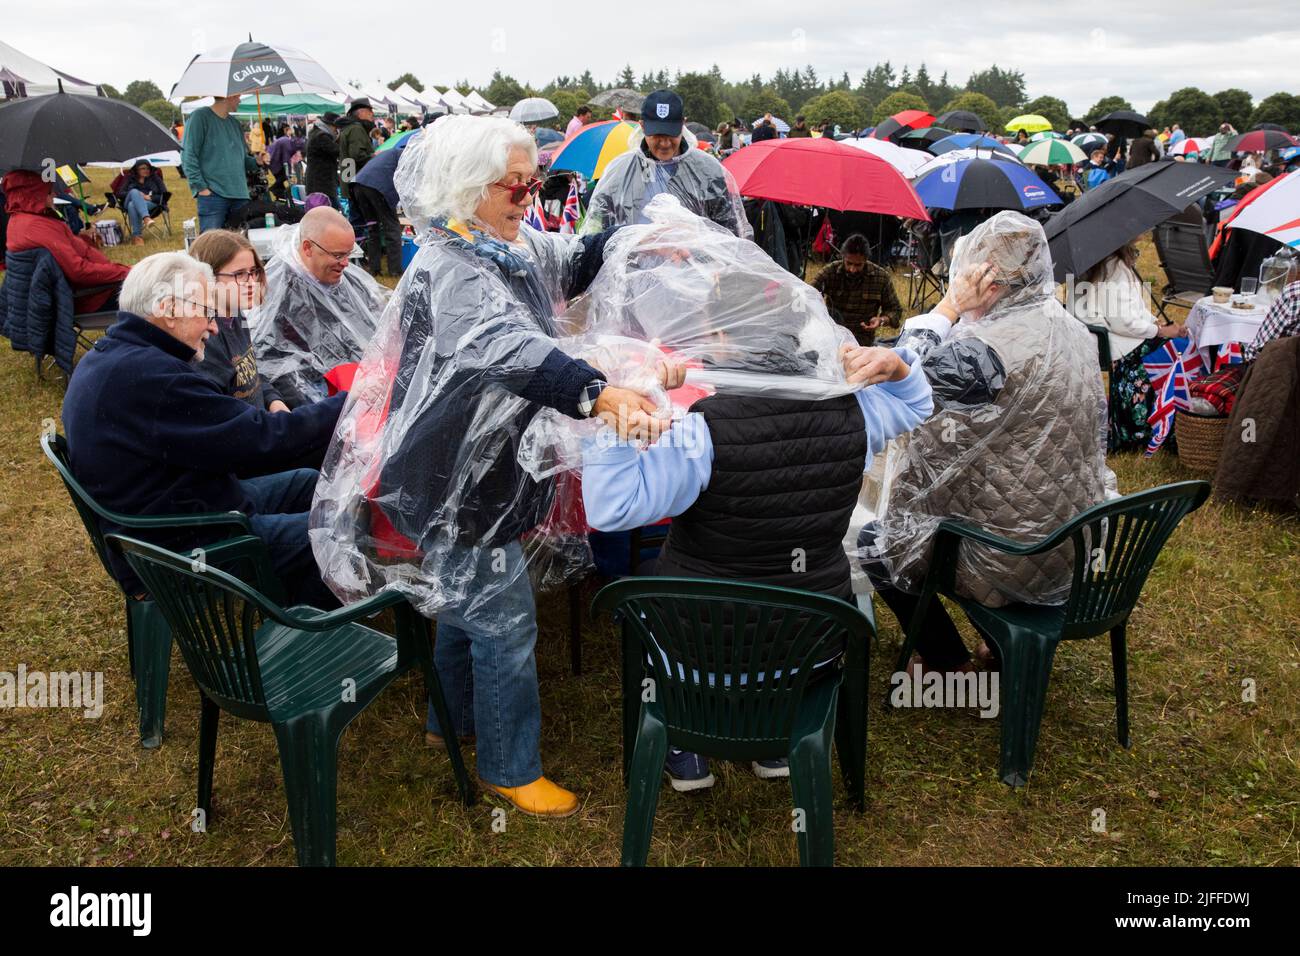 Woodstock, Oxfordshire, Großbritannien. 2.. Juli 2022. Zwei Frauen ziehen einen Regenponcho an. Battle Prom Picknick-Konzerte. Blenheim Palace. Vereinigtes Königreich. Quelle: Alexander Caminada/Alamy Live News Stockfoto